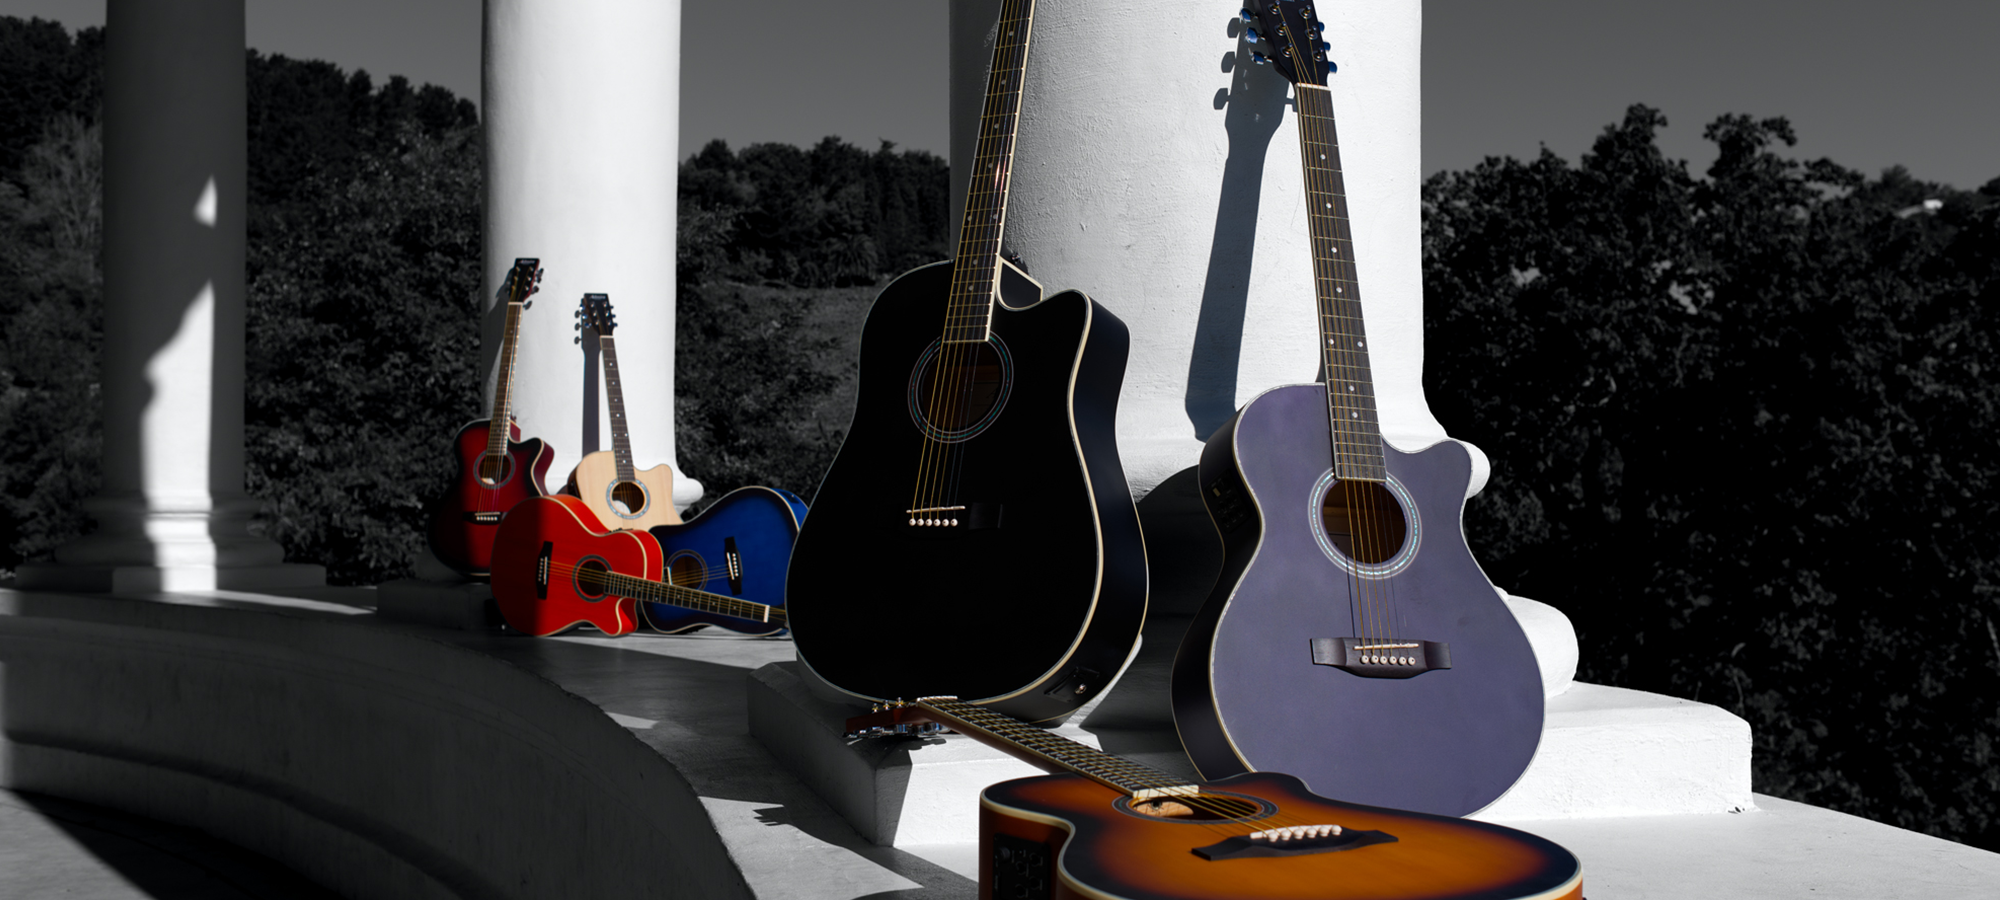 Wir bieten akustische Gitarren unter der Marke admira an.